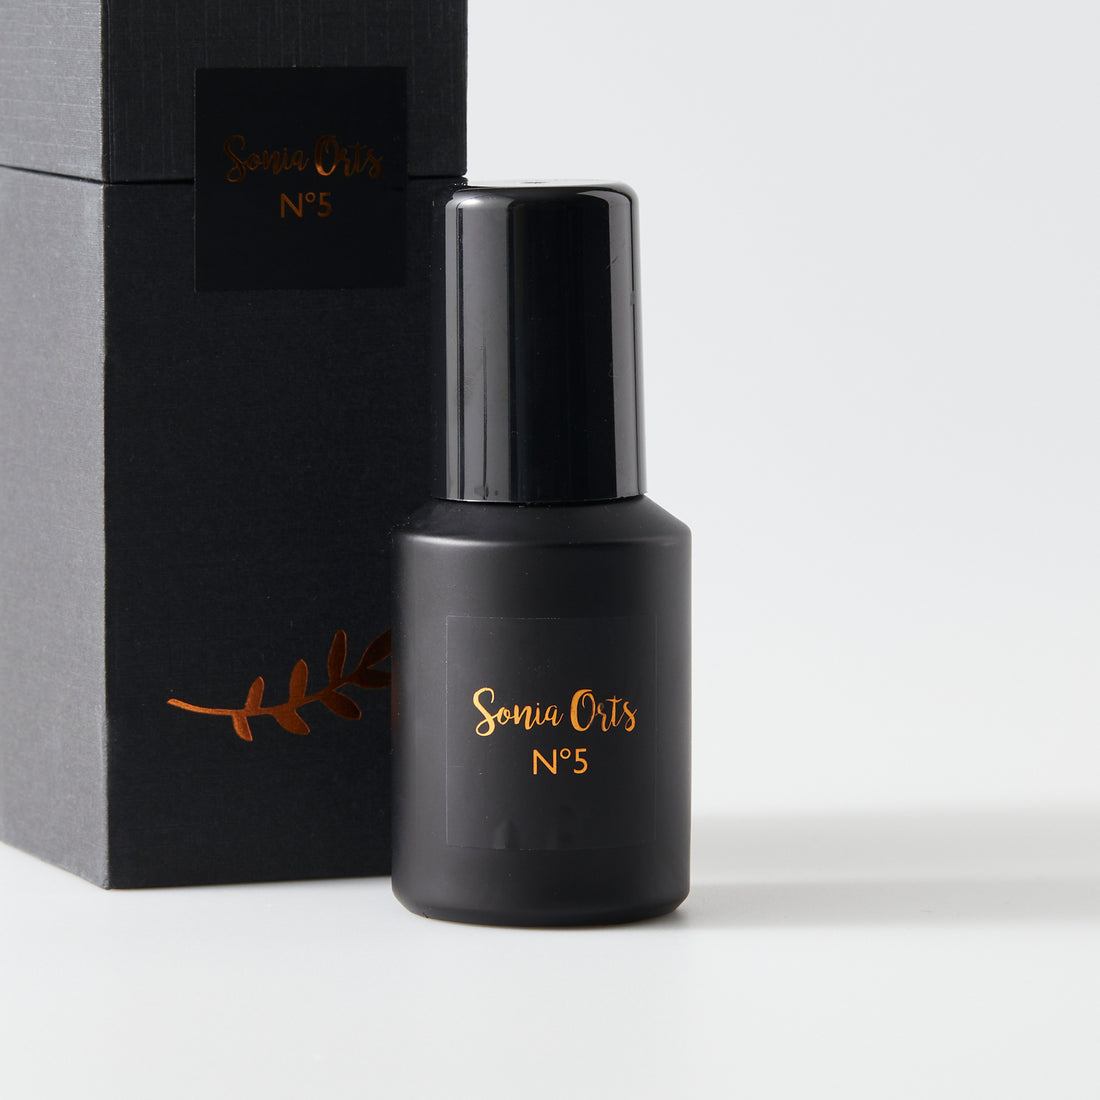 Sonia Orts No 5 natural perfume